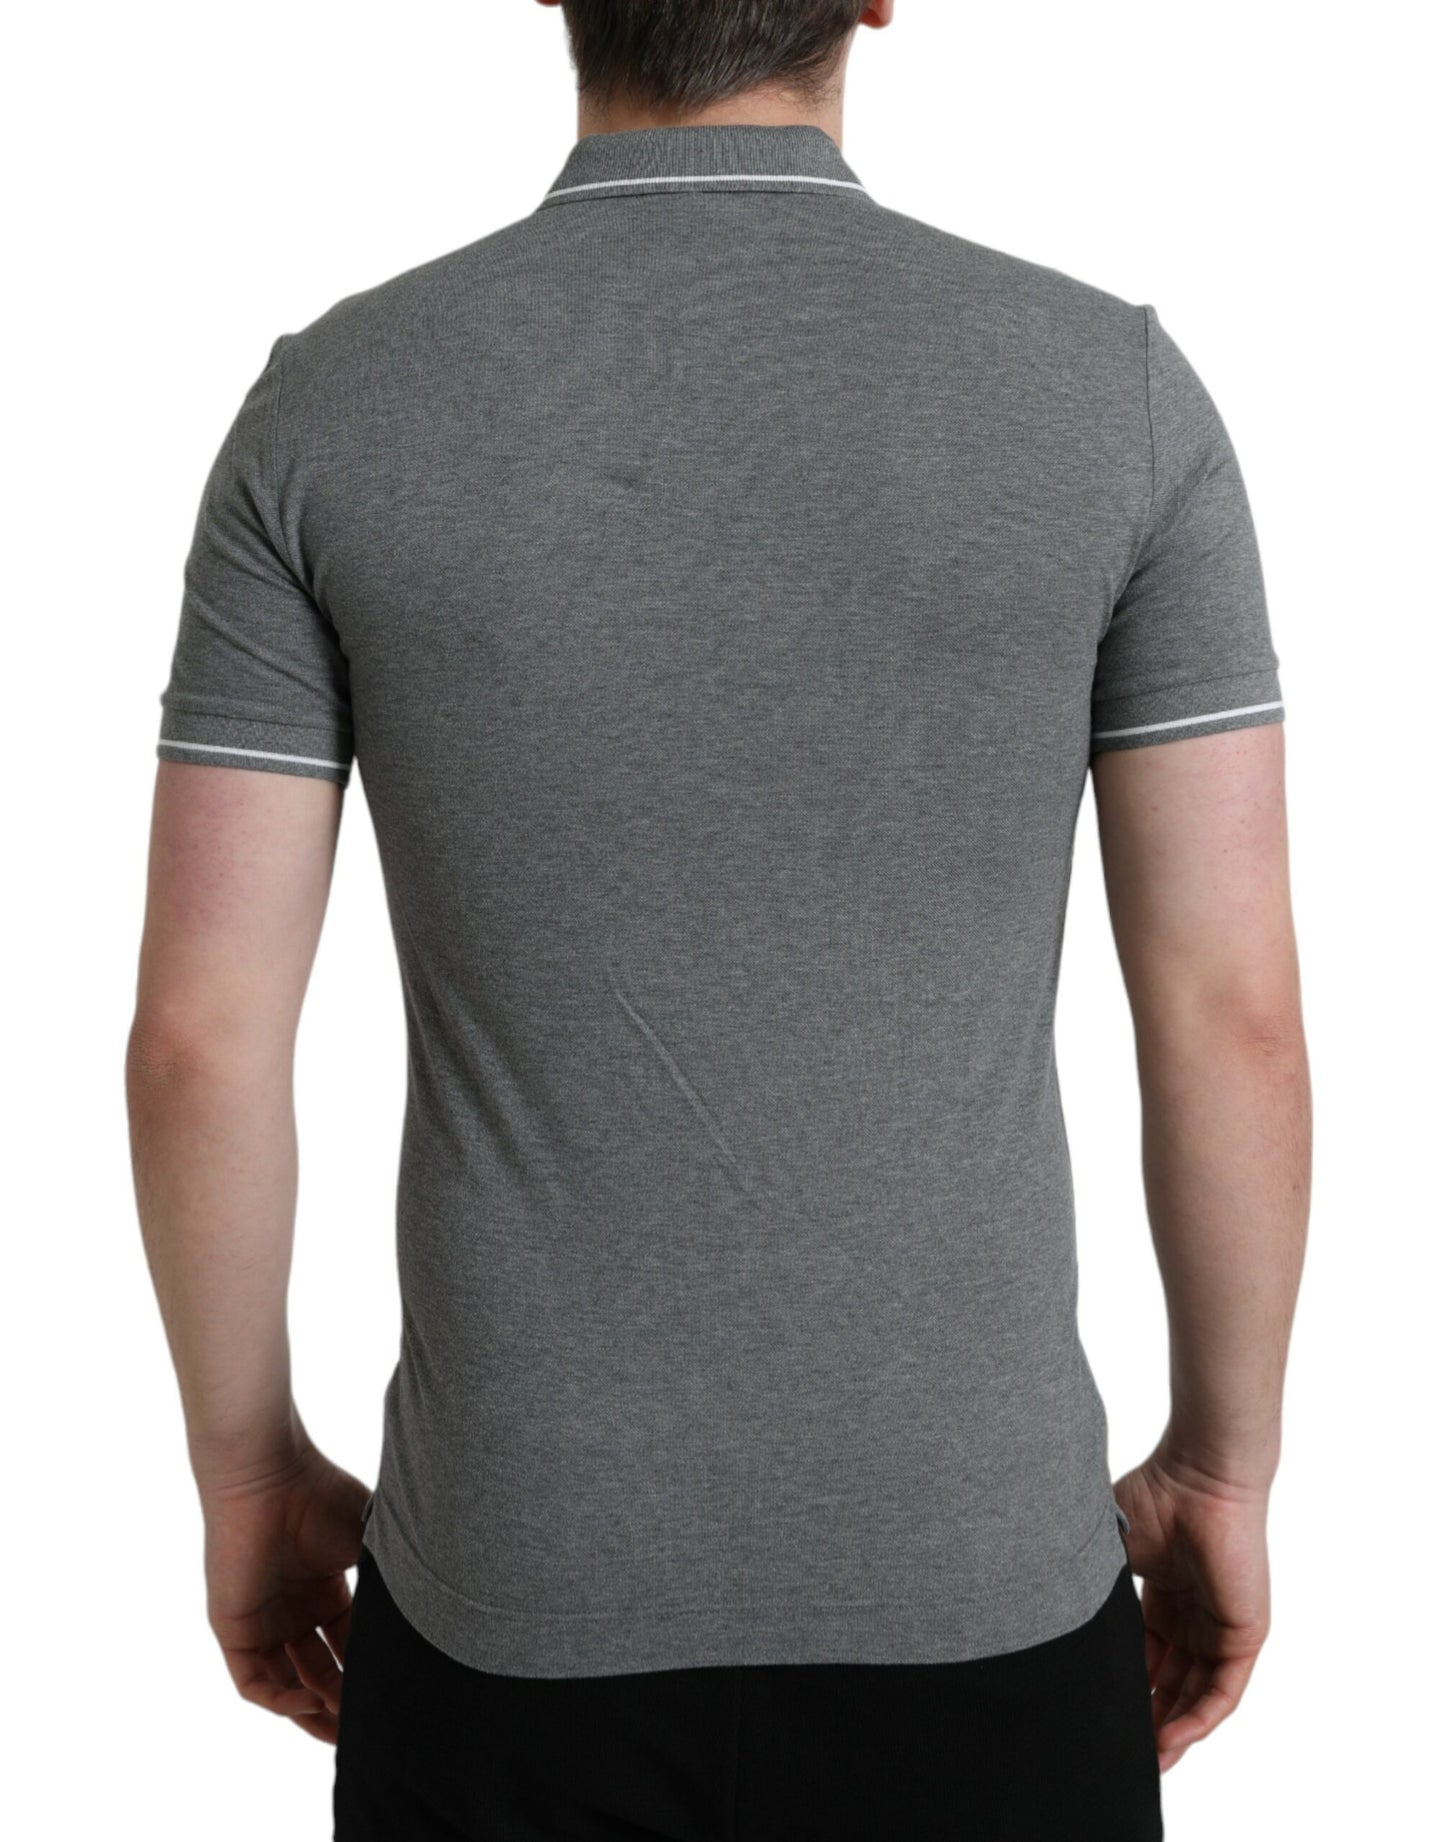 Elegant Grey Cotton Polo T-Shirt